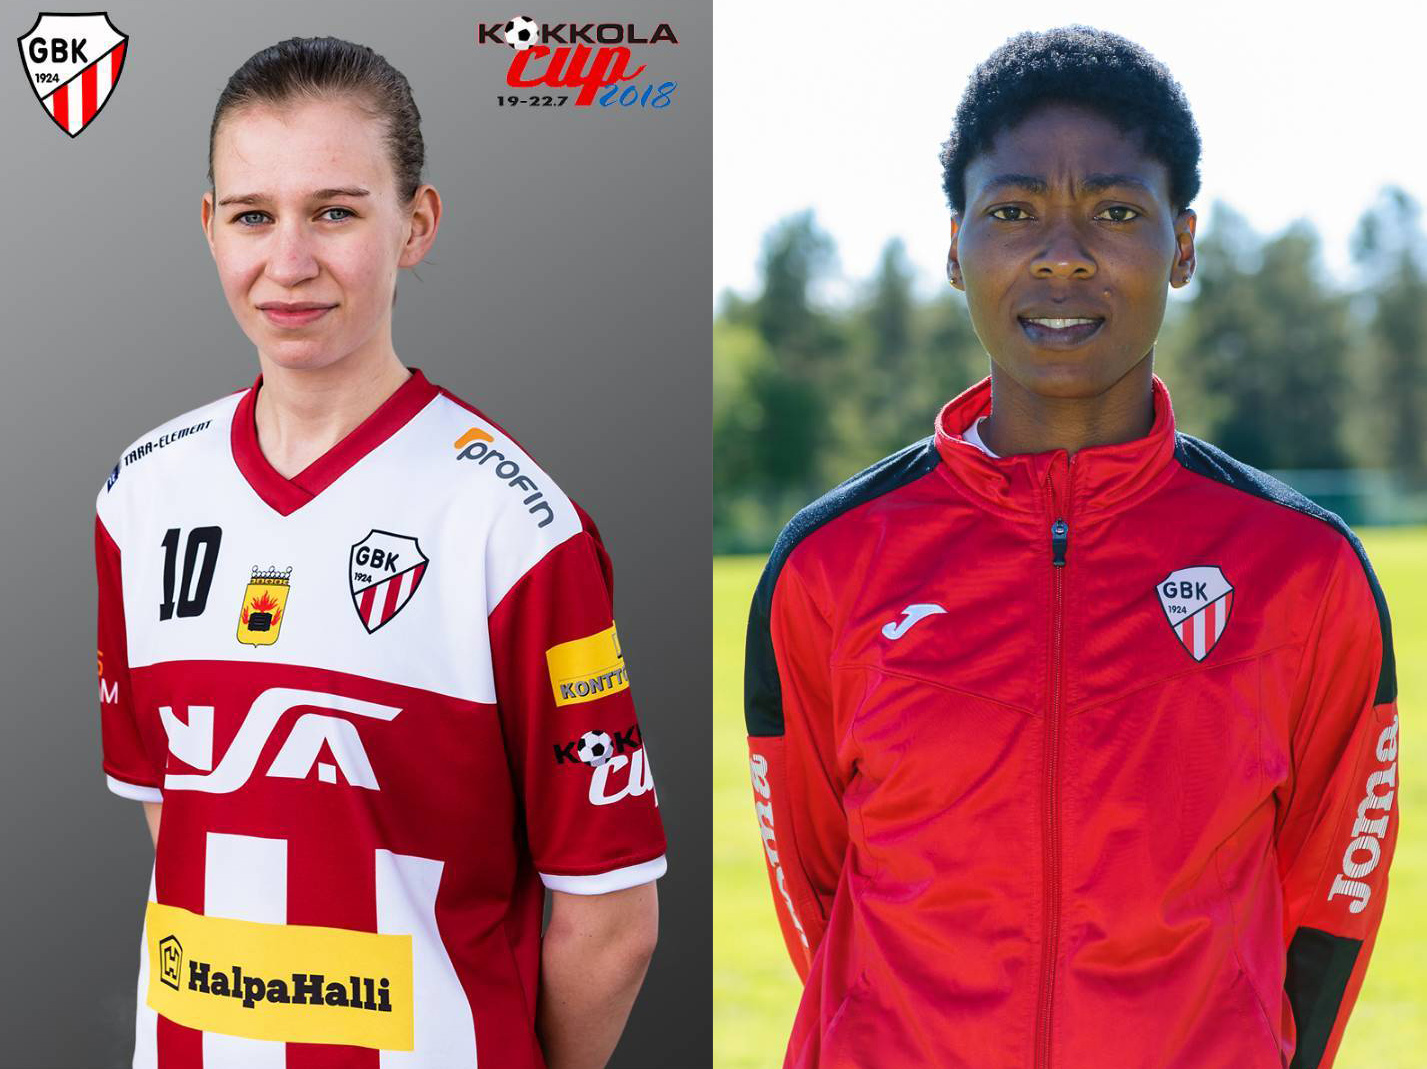 Andrea Ström ja Grace Ogunbajo jatkaa kaudella 2019